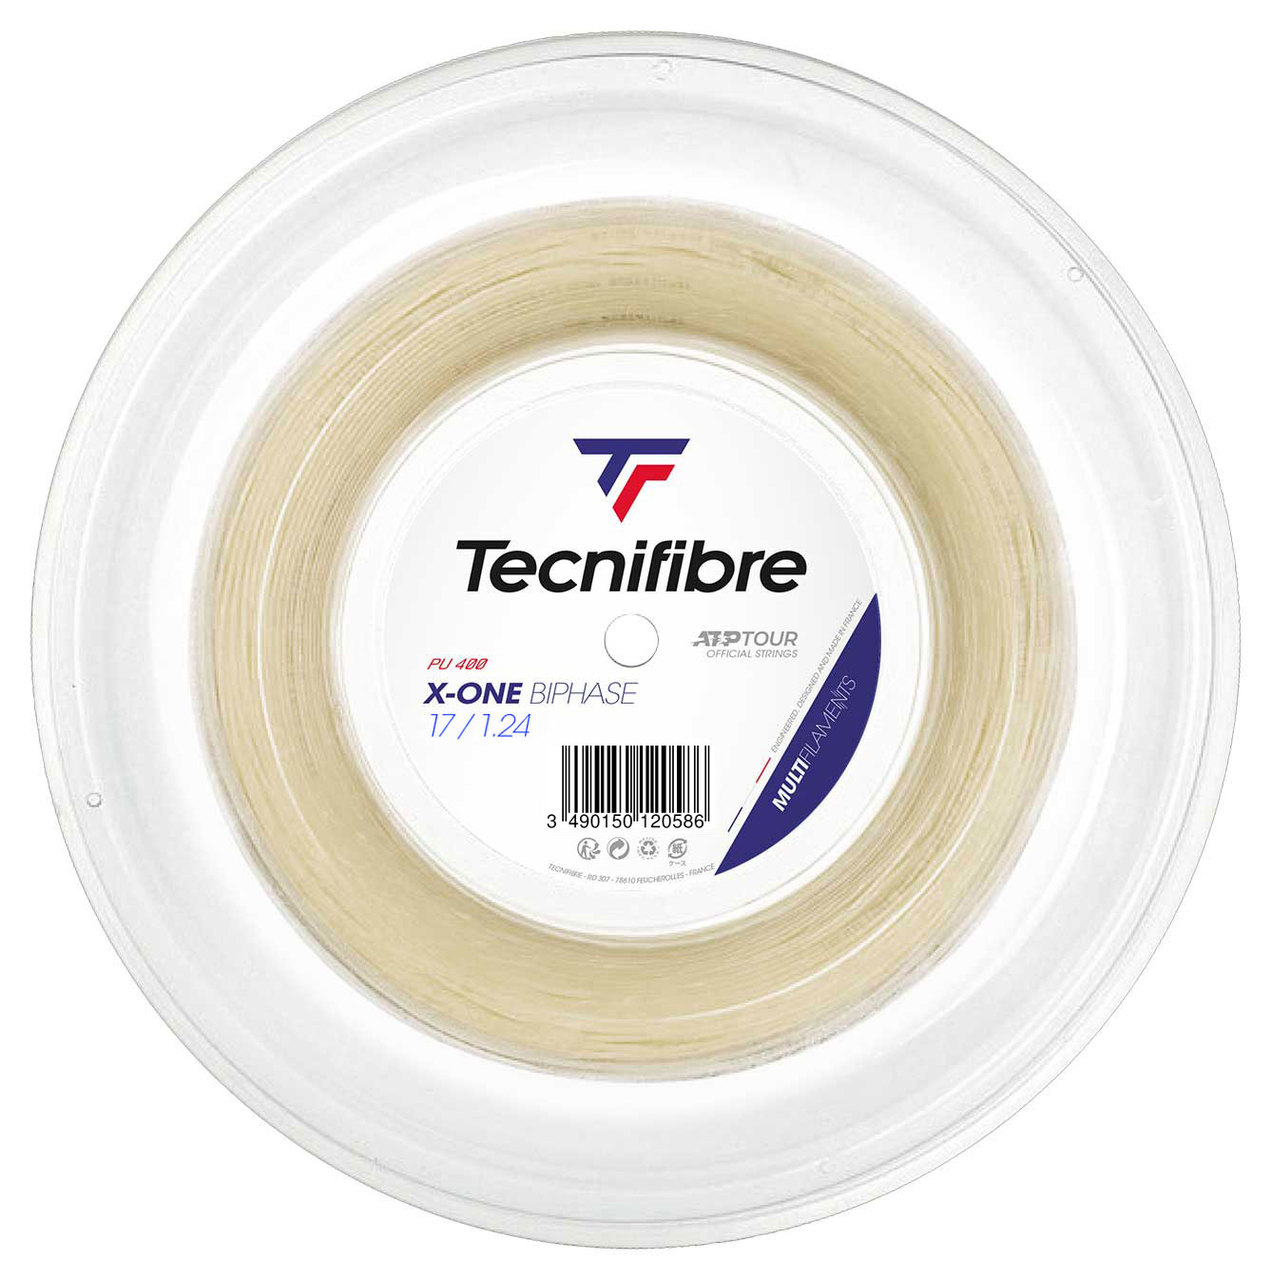 Tecnifibre - X-One Biphase 200m (1.24mm) - String reel | racket24.de